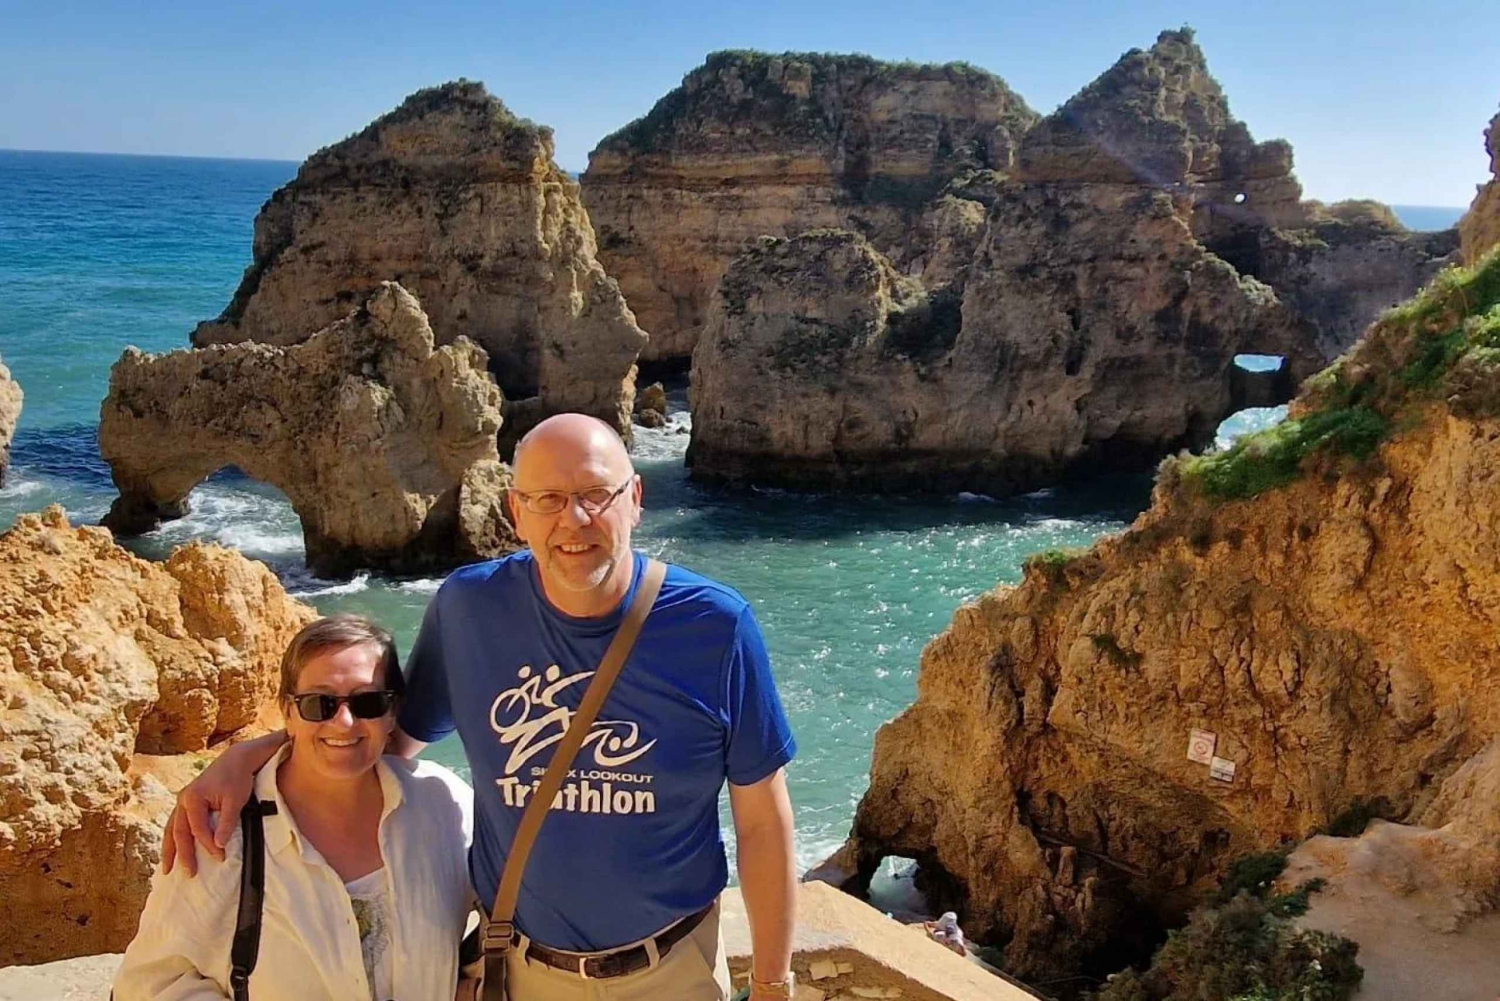 Prywatna całodniowa wycieczka po zachodnim wybrzeżu Algarve - z Faro